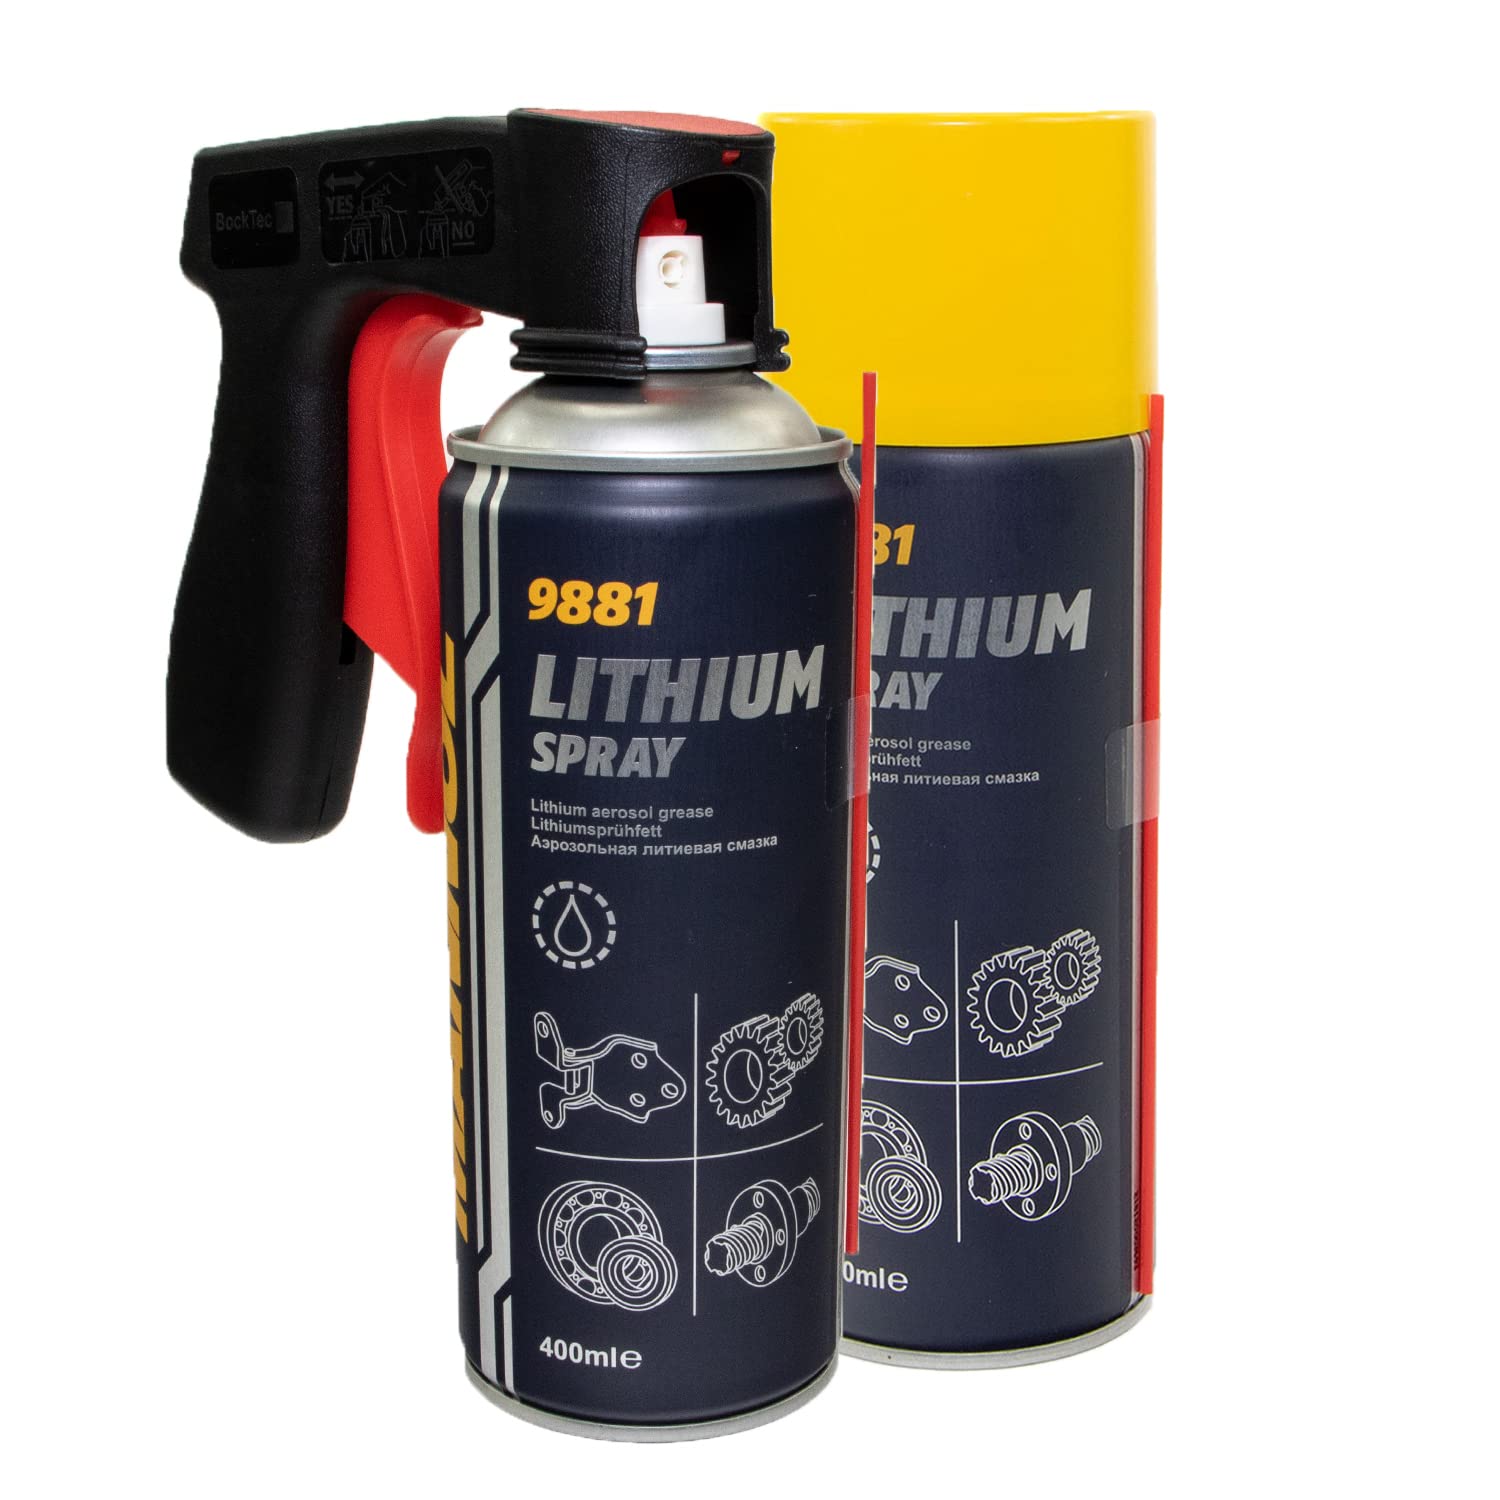 Lithium Spray Lithiumfett MANNOL 9881 2 X 400 ml mit Pistolengriff von MVH Bockauf